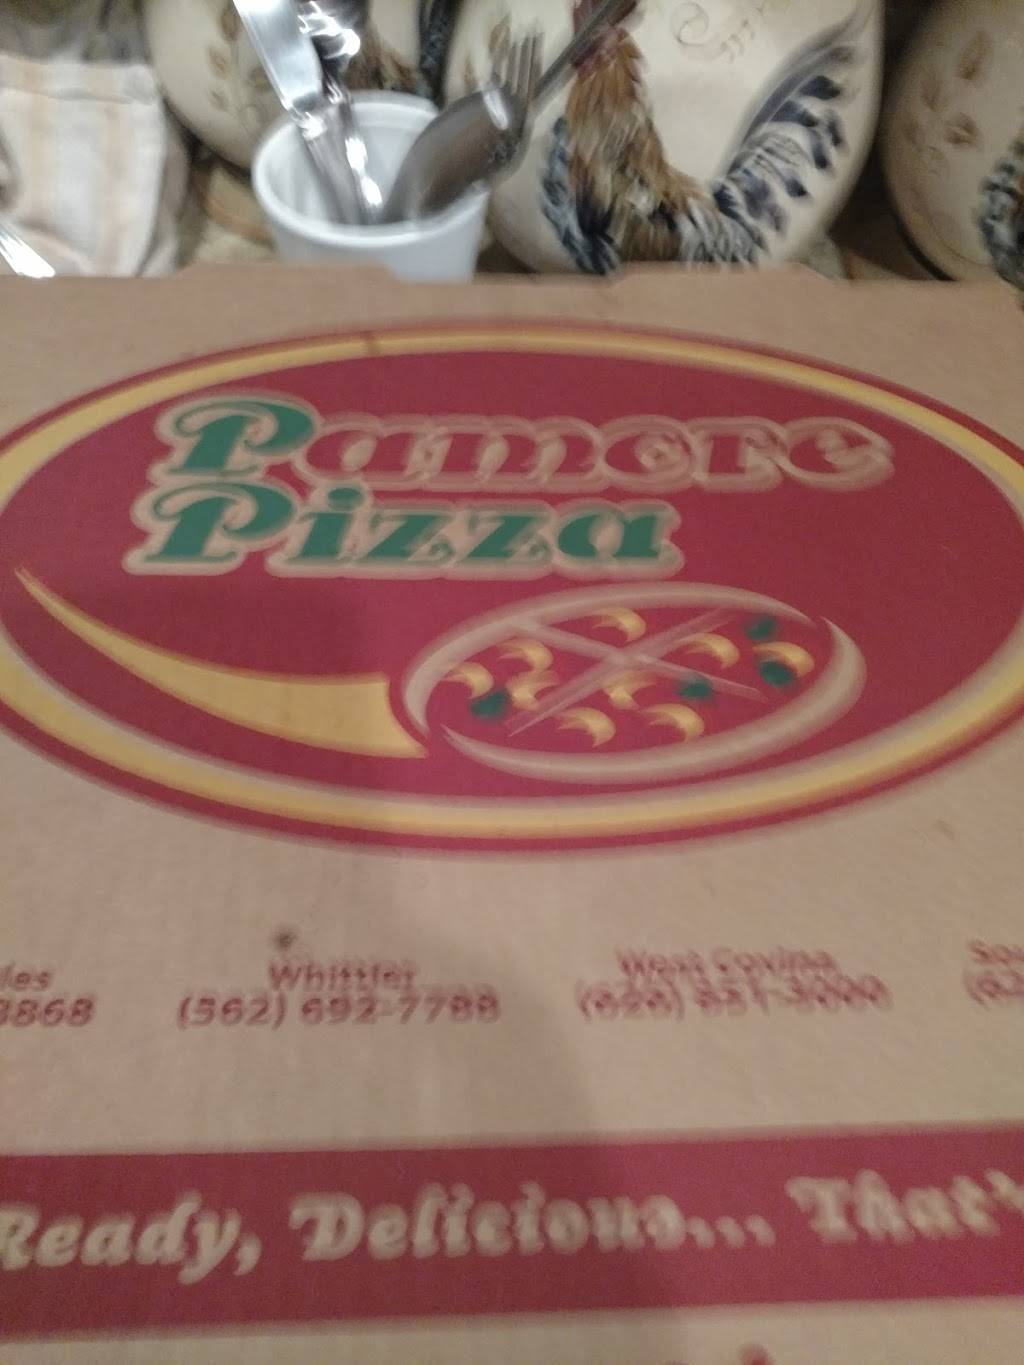 Pamore Pizza | 5416 Norwalk Blvd b3, Whittier, CA 90601, USA | Phone: (562) 692-7788